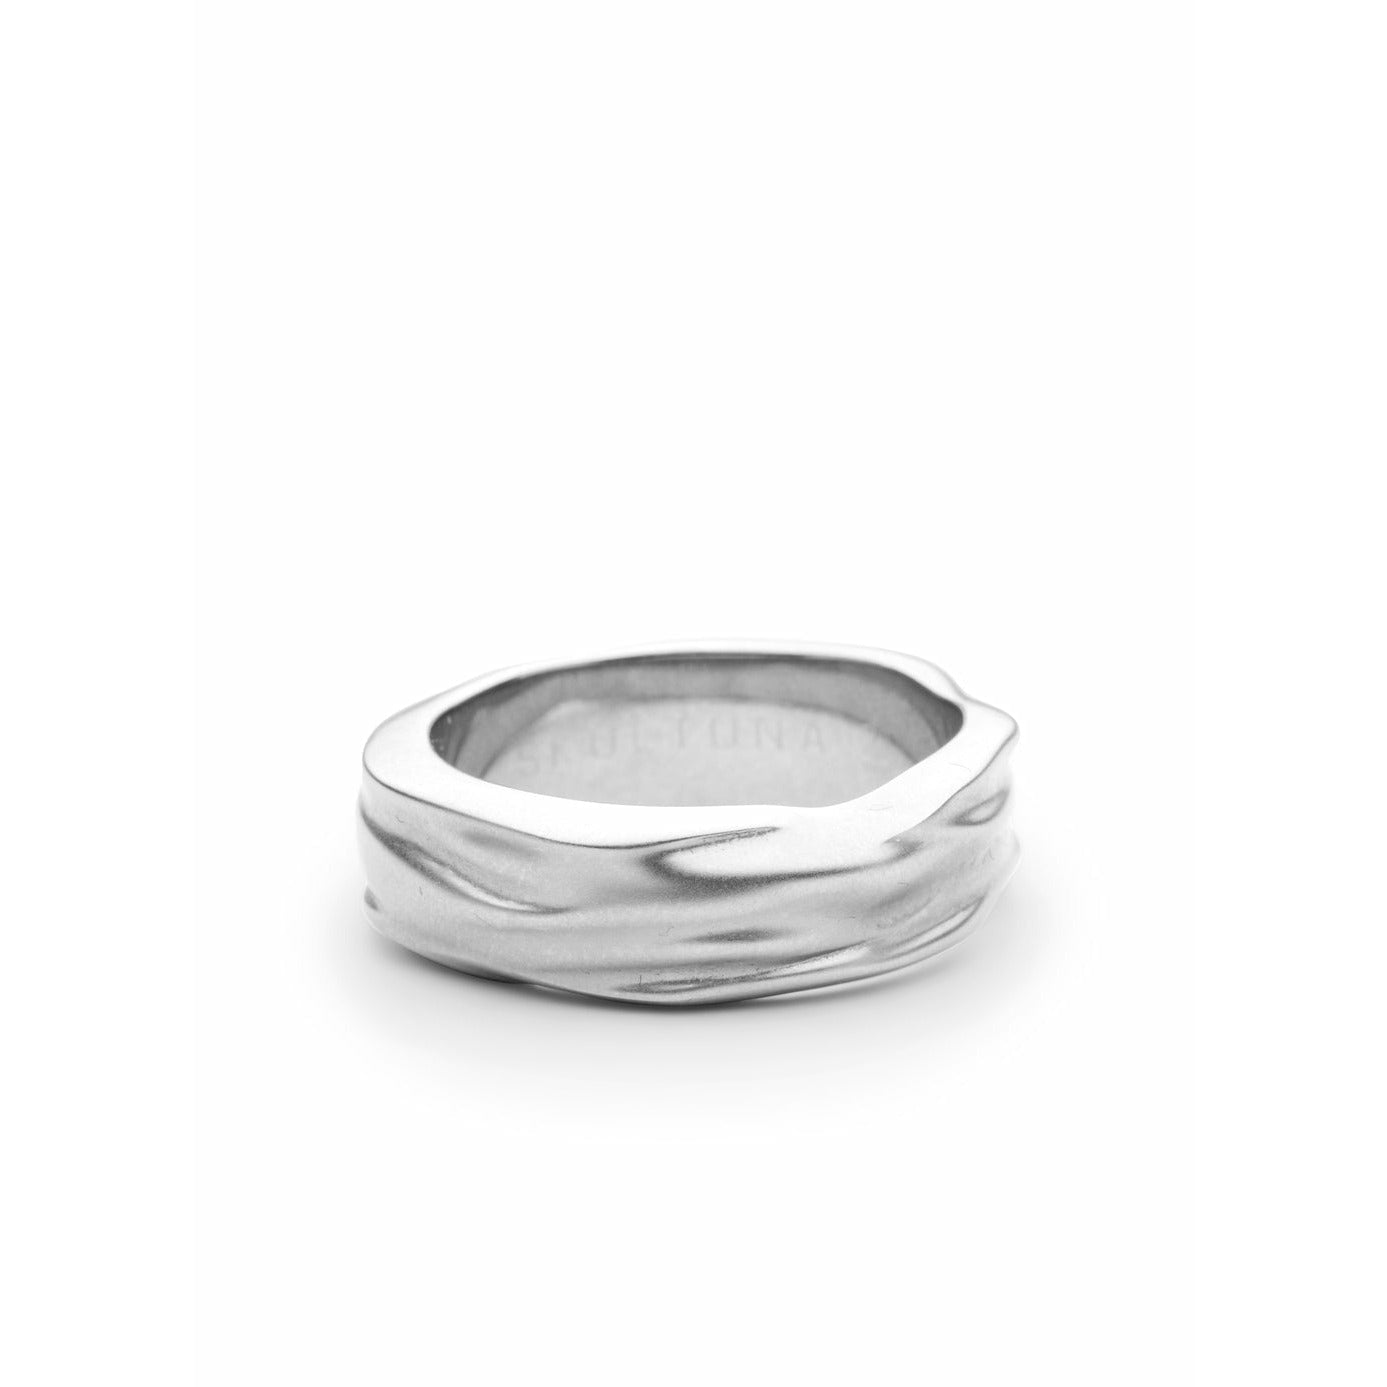 Skultuna Objetos opacos anillo grueso pequeño acero mate, Ø1,6 cm